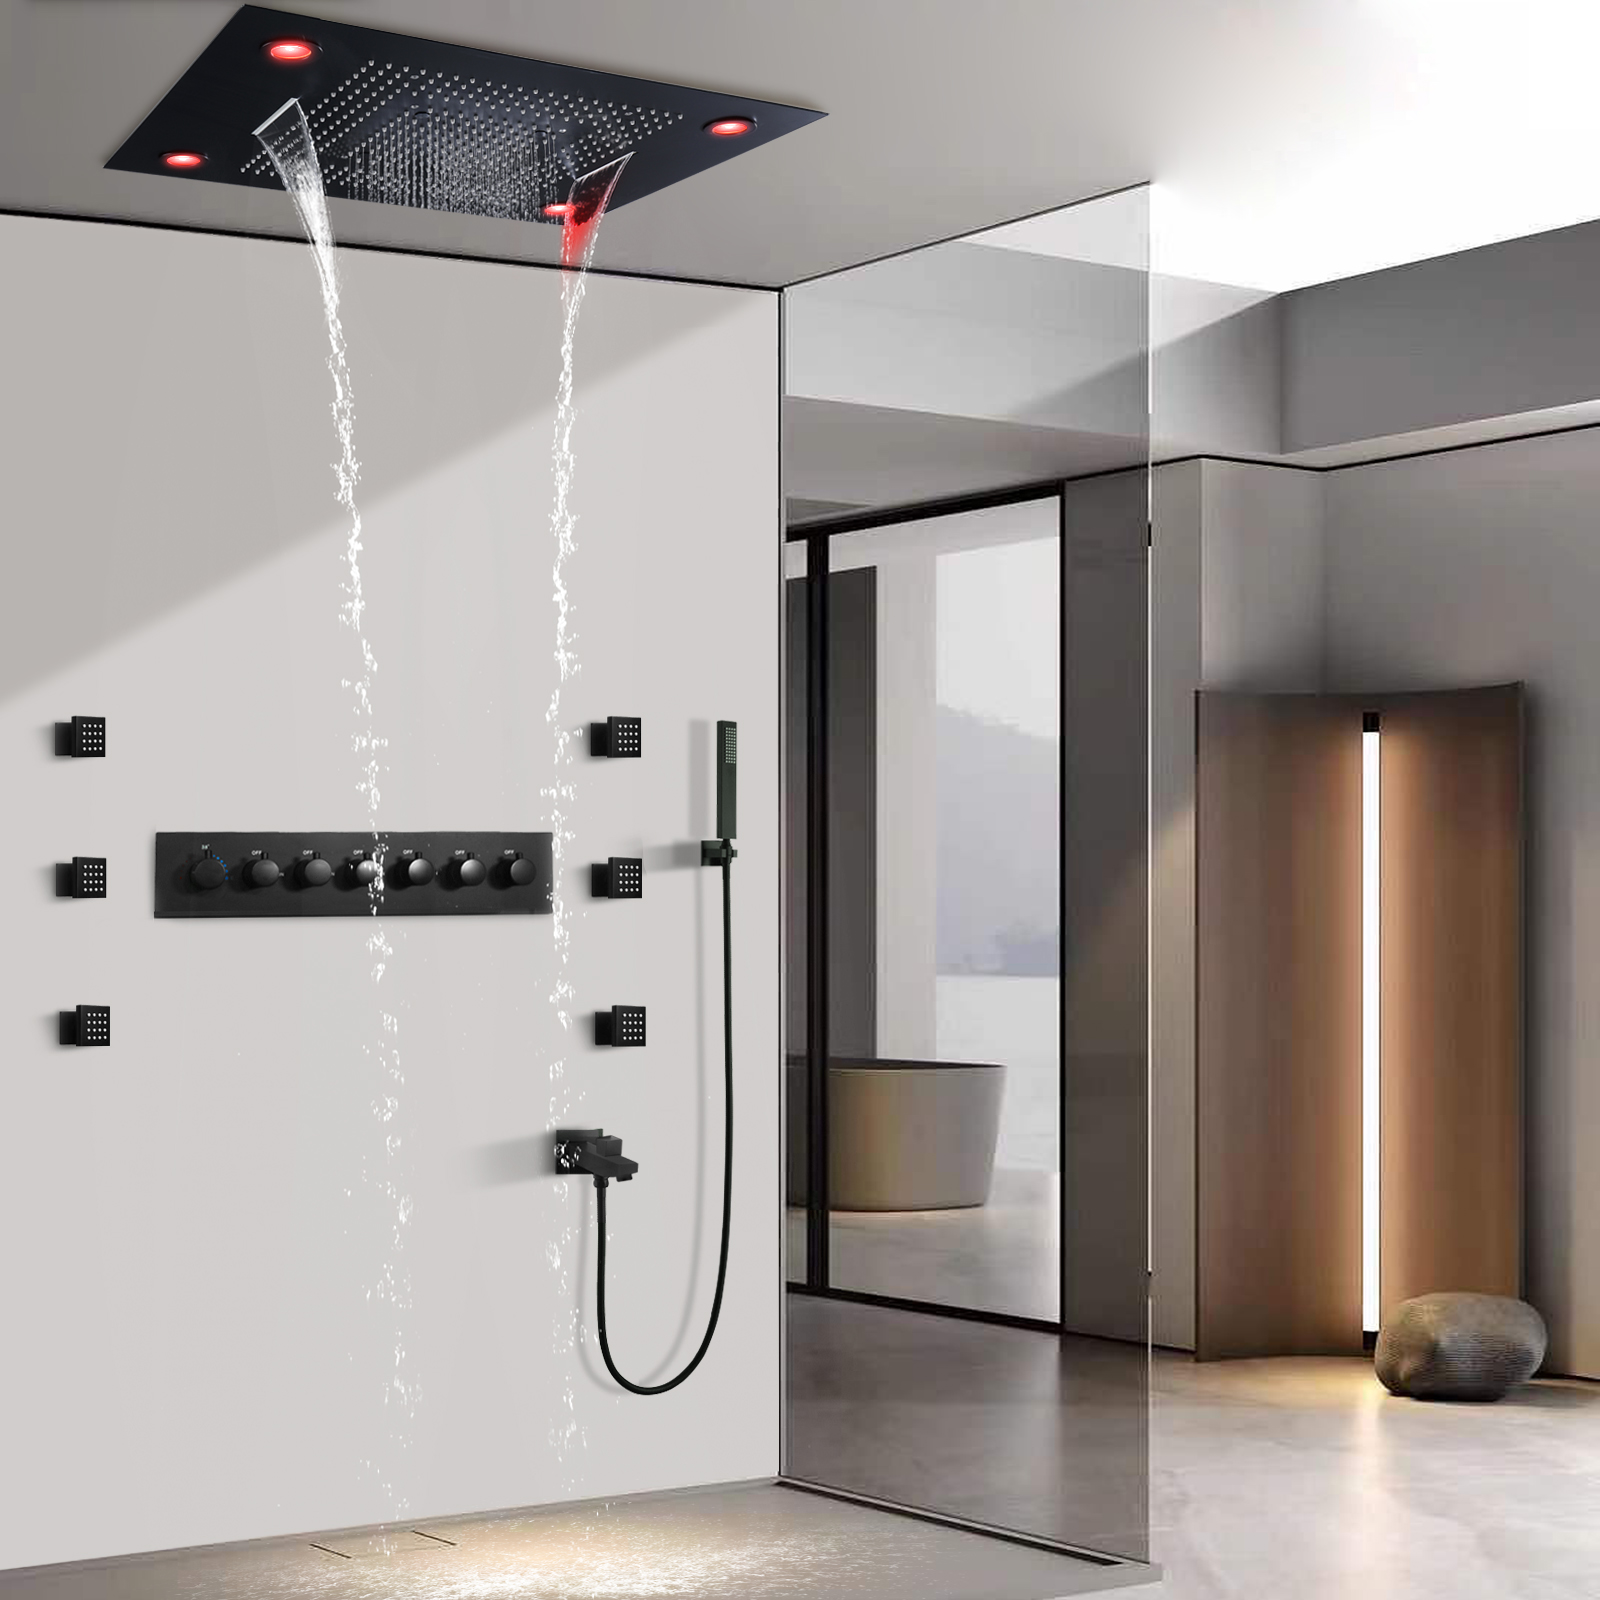 Cabezal de ducha negro de 800x600MM, sistema de ducha multifunción termostático LED para baño con chorros de cuerpo de ducha